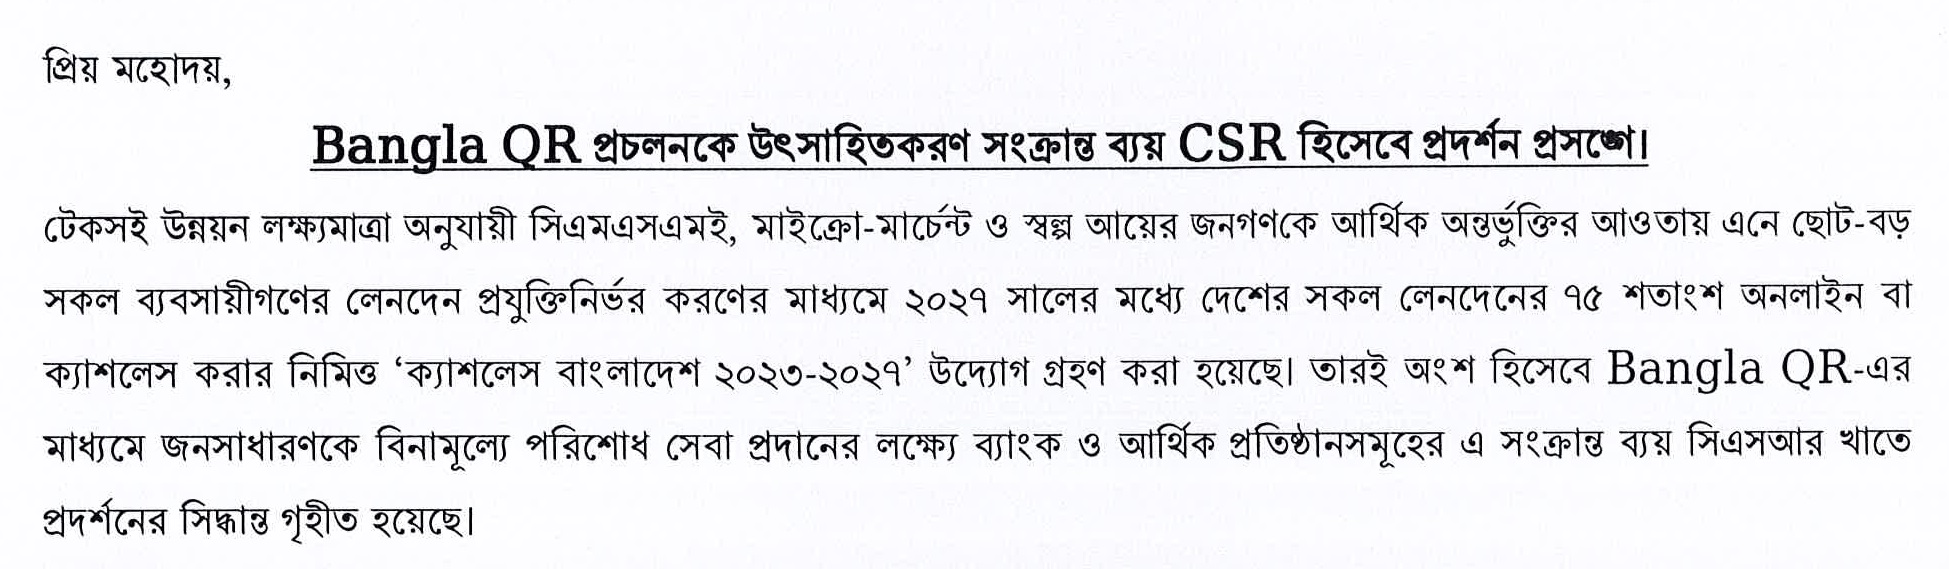 Bangla QR প্রচলনকে উৎসাহিতকরণ সংক্রান্ত ব্যয় CSR হিসেবে প্রদর্শন প্রসঙ্গে।